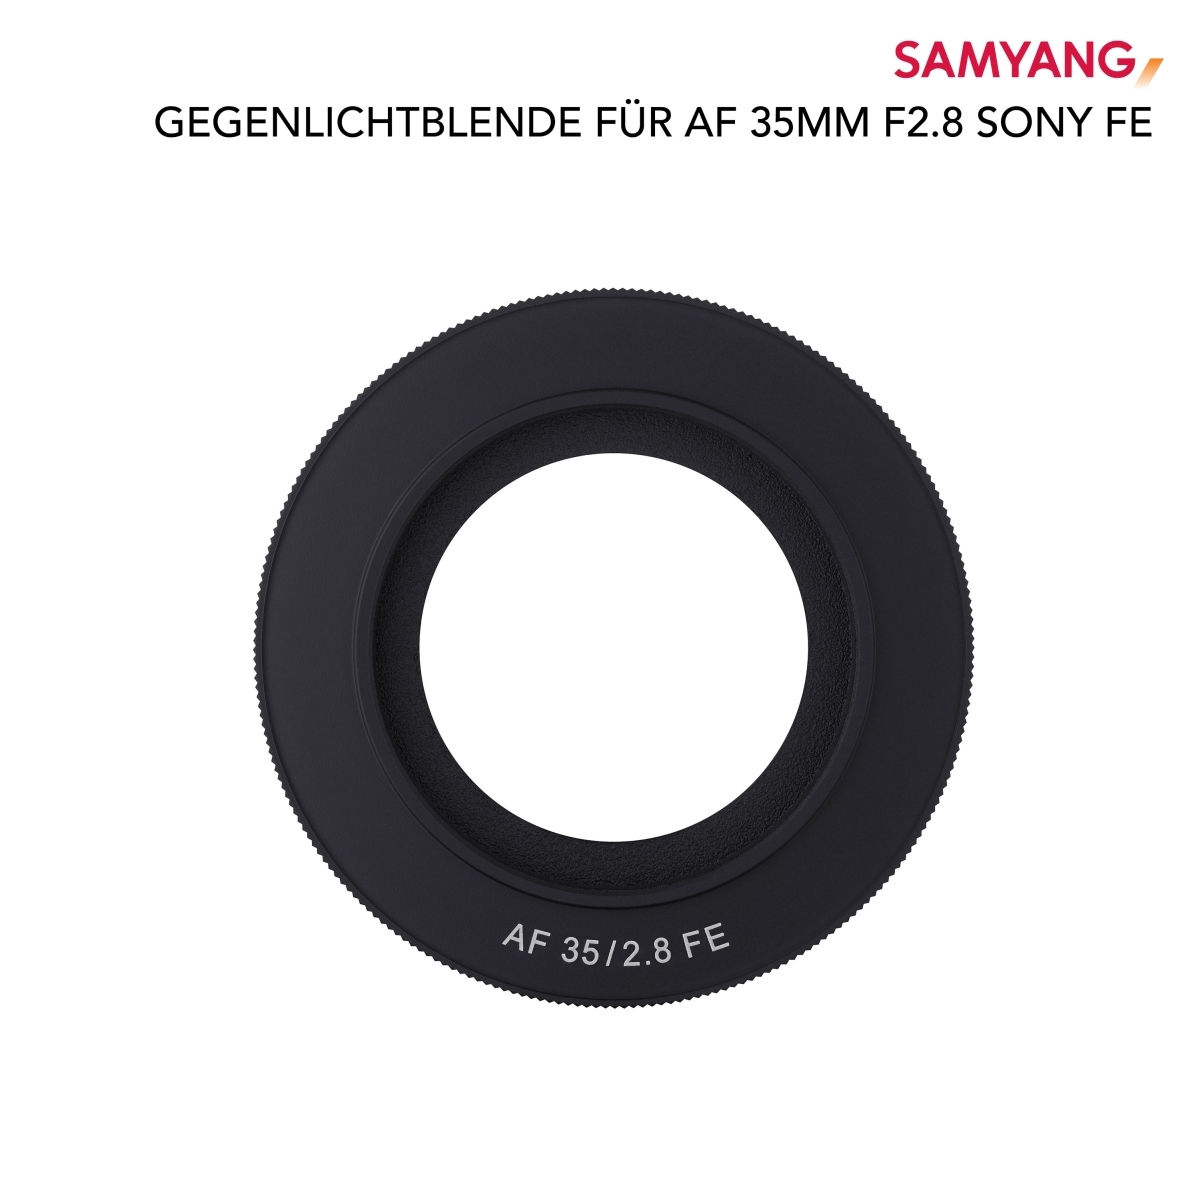 Parasoleil Samyang pour AF 35mm F2,8 Sony FE